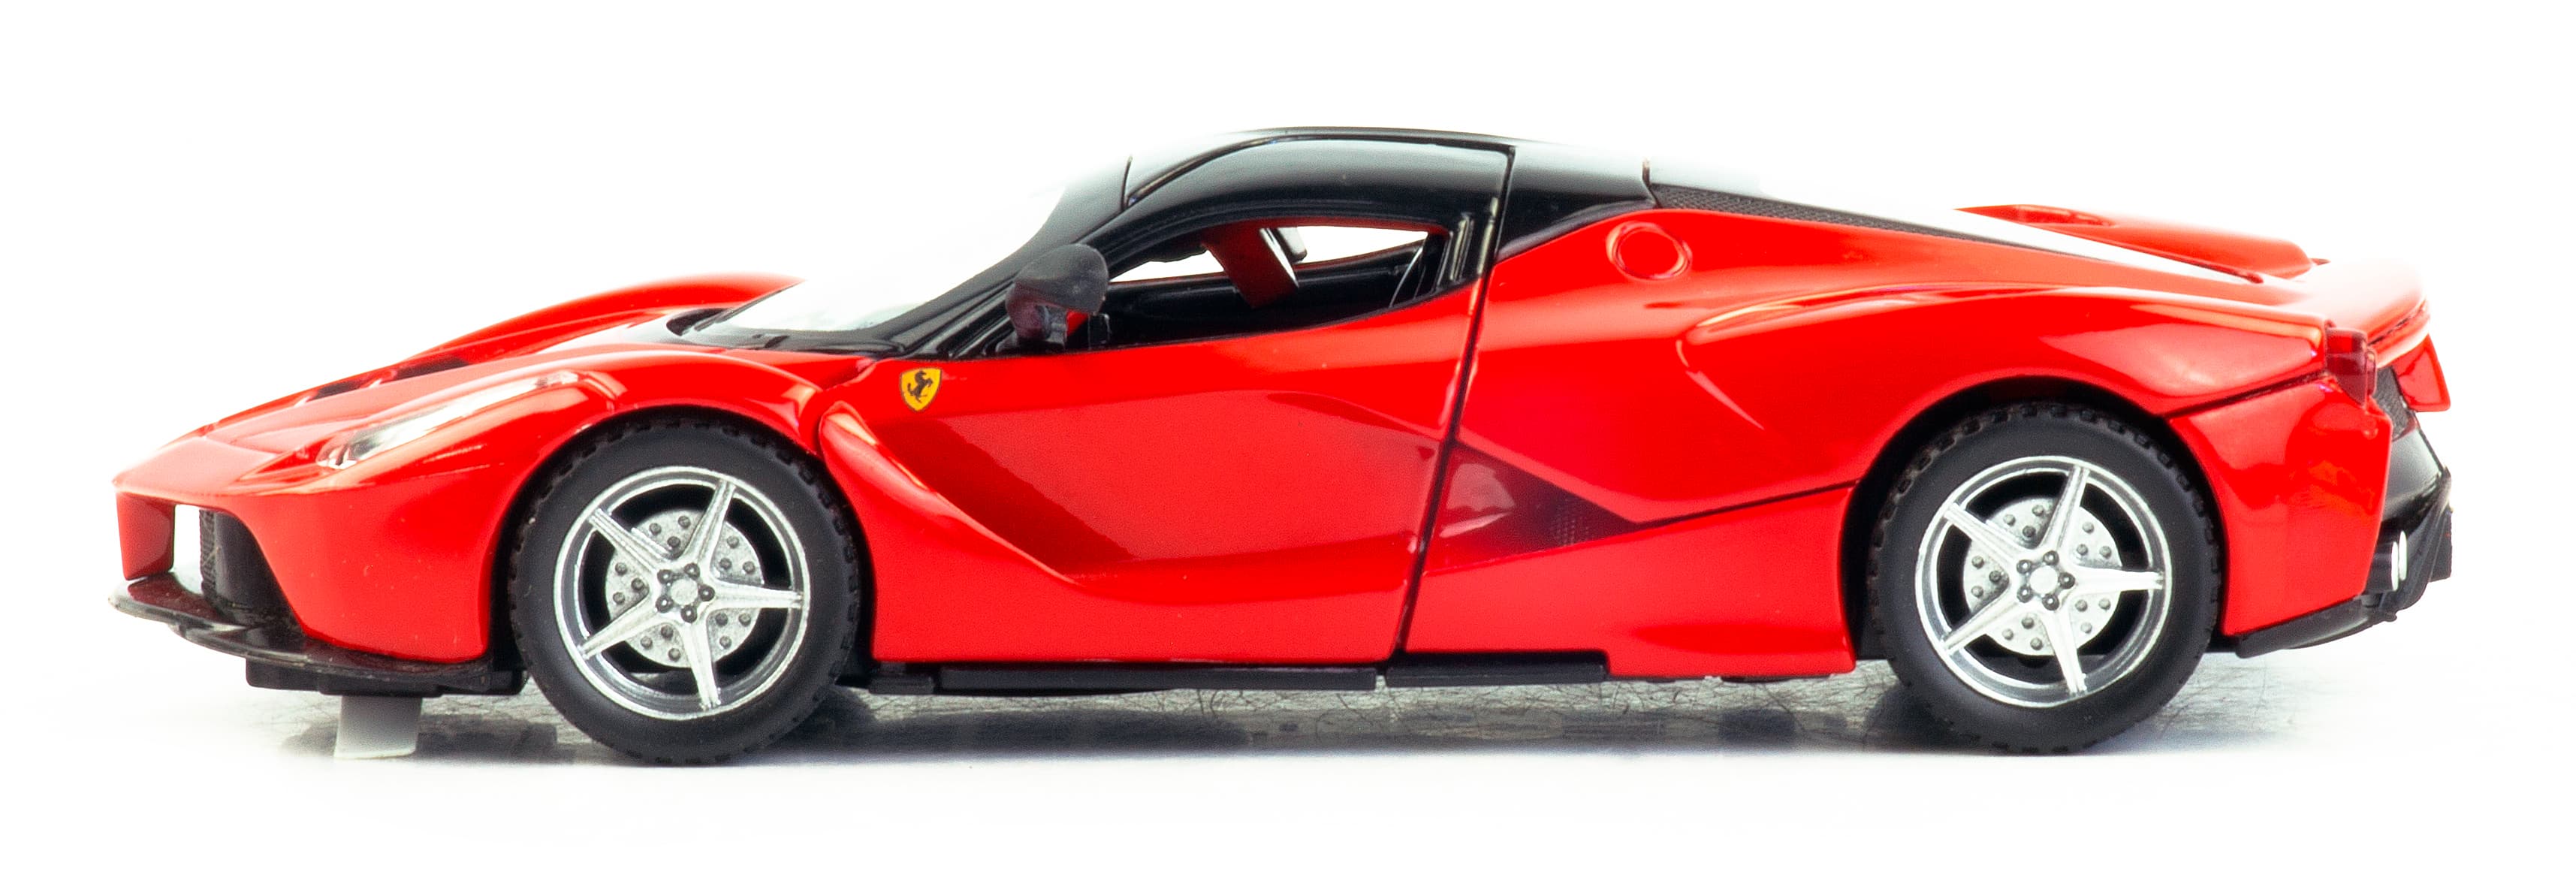 Металлическая машинка 1:32 «Ferrari LaFerrari» А32161, 15 см., инерционная, свет и звук / Красный